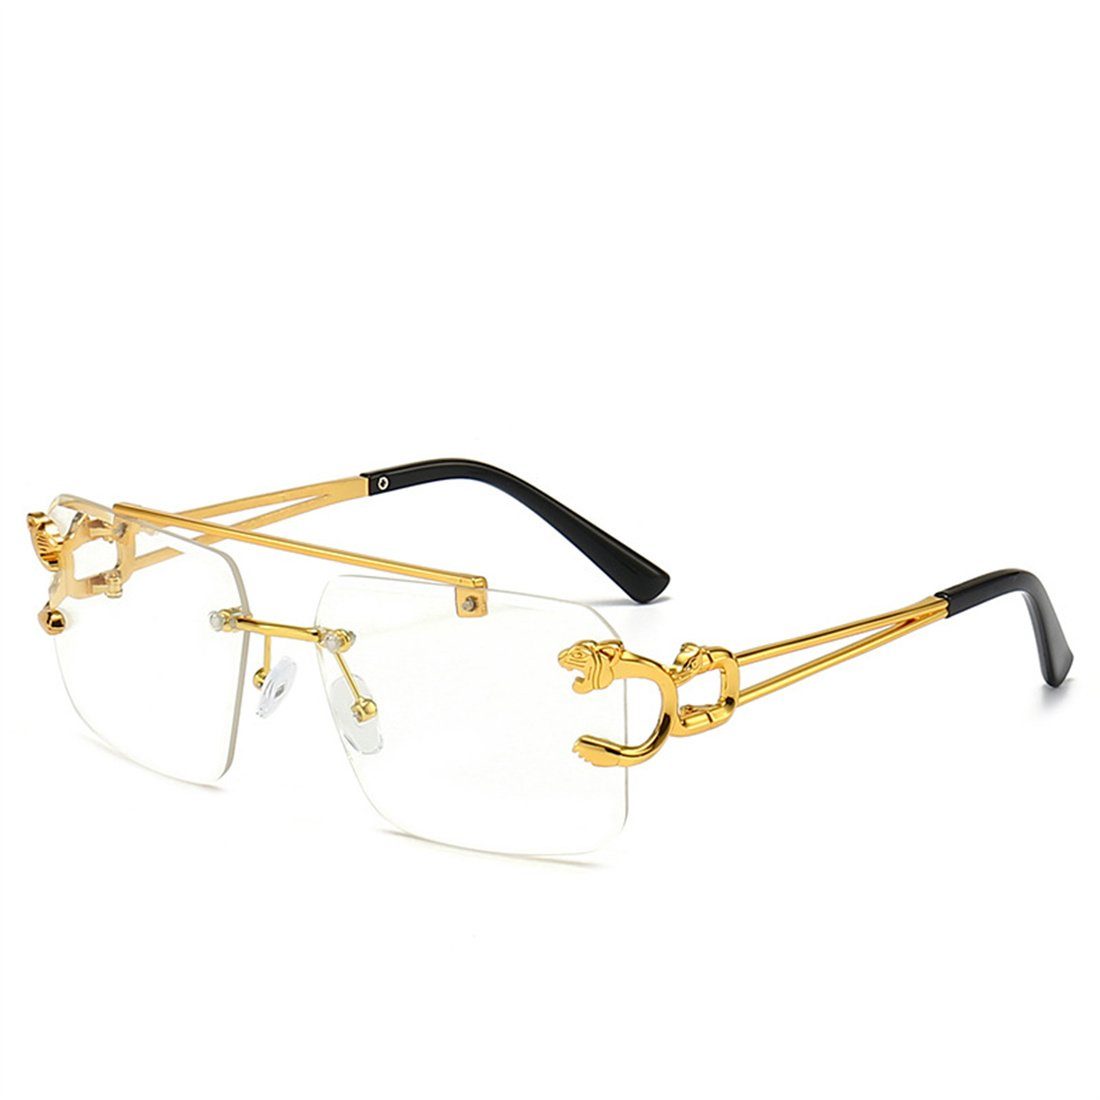 DÖRÖY Sonnenbrille Damen-Retro-Sonnenbrille ohne Rand, Herren-Sonnenbrille für draußen transparent